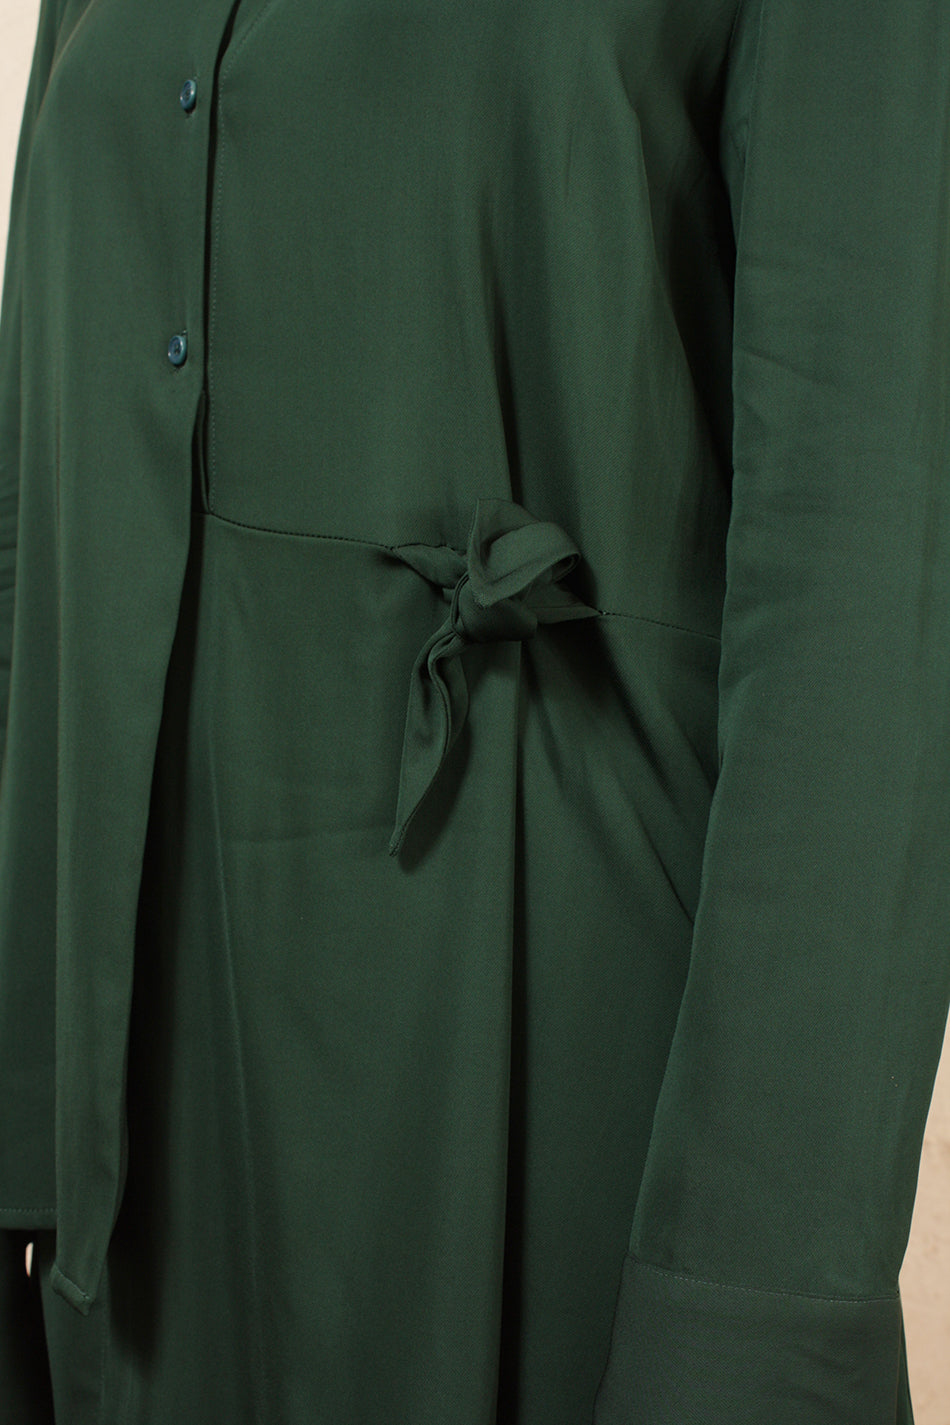 DEVLA GREEN DRESS WITH TWIST